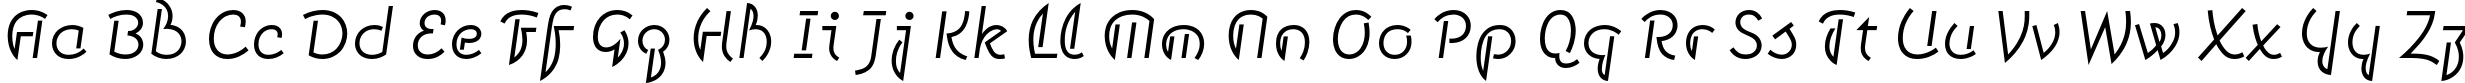 Пример написания английского алфавита шрифтом Smena Light